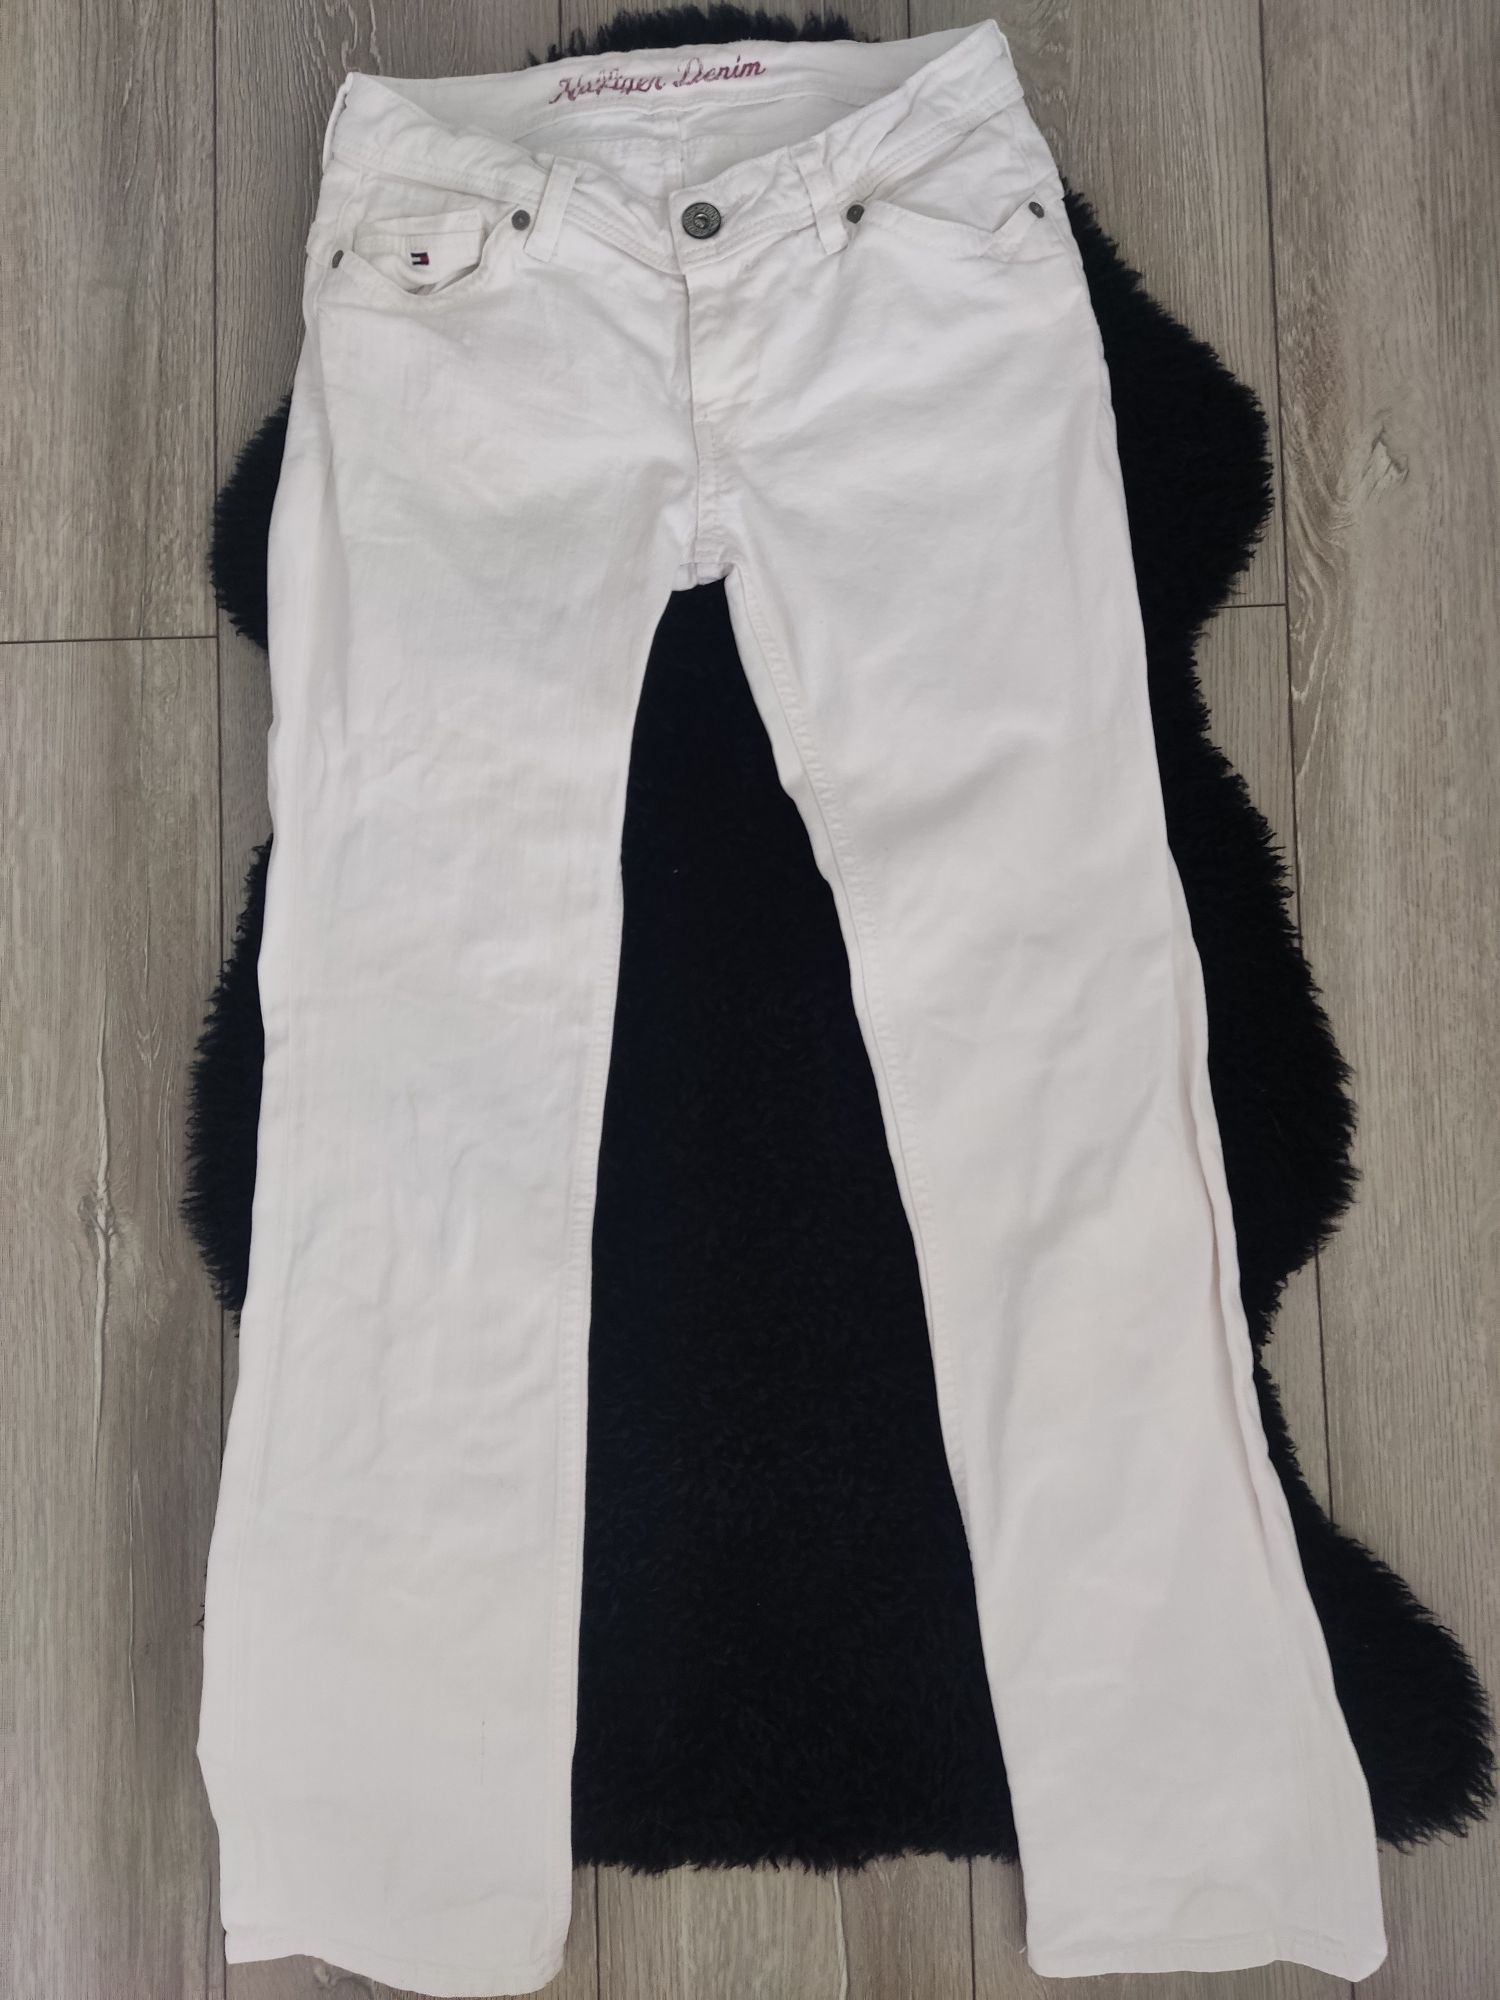 Spodnie jeansowe białe damskie Hilfiger Denim S